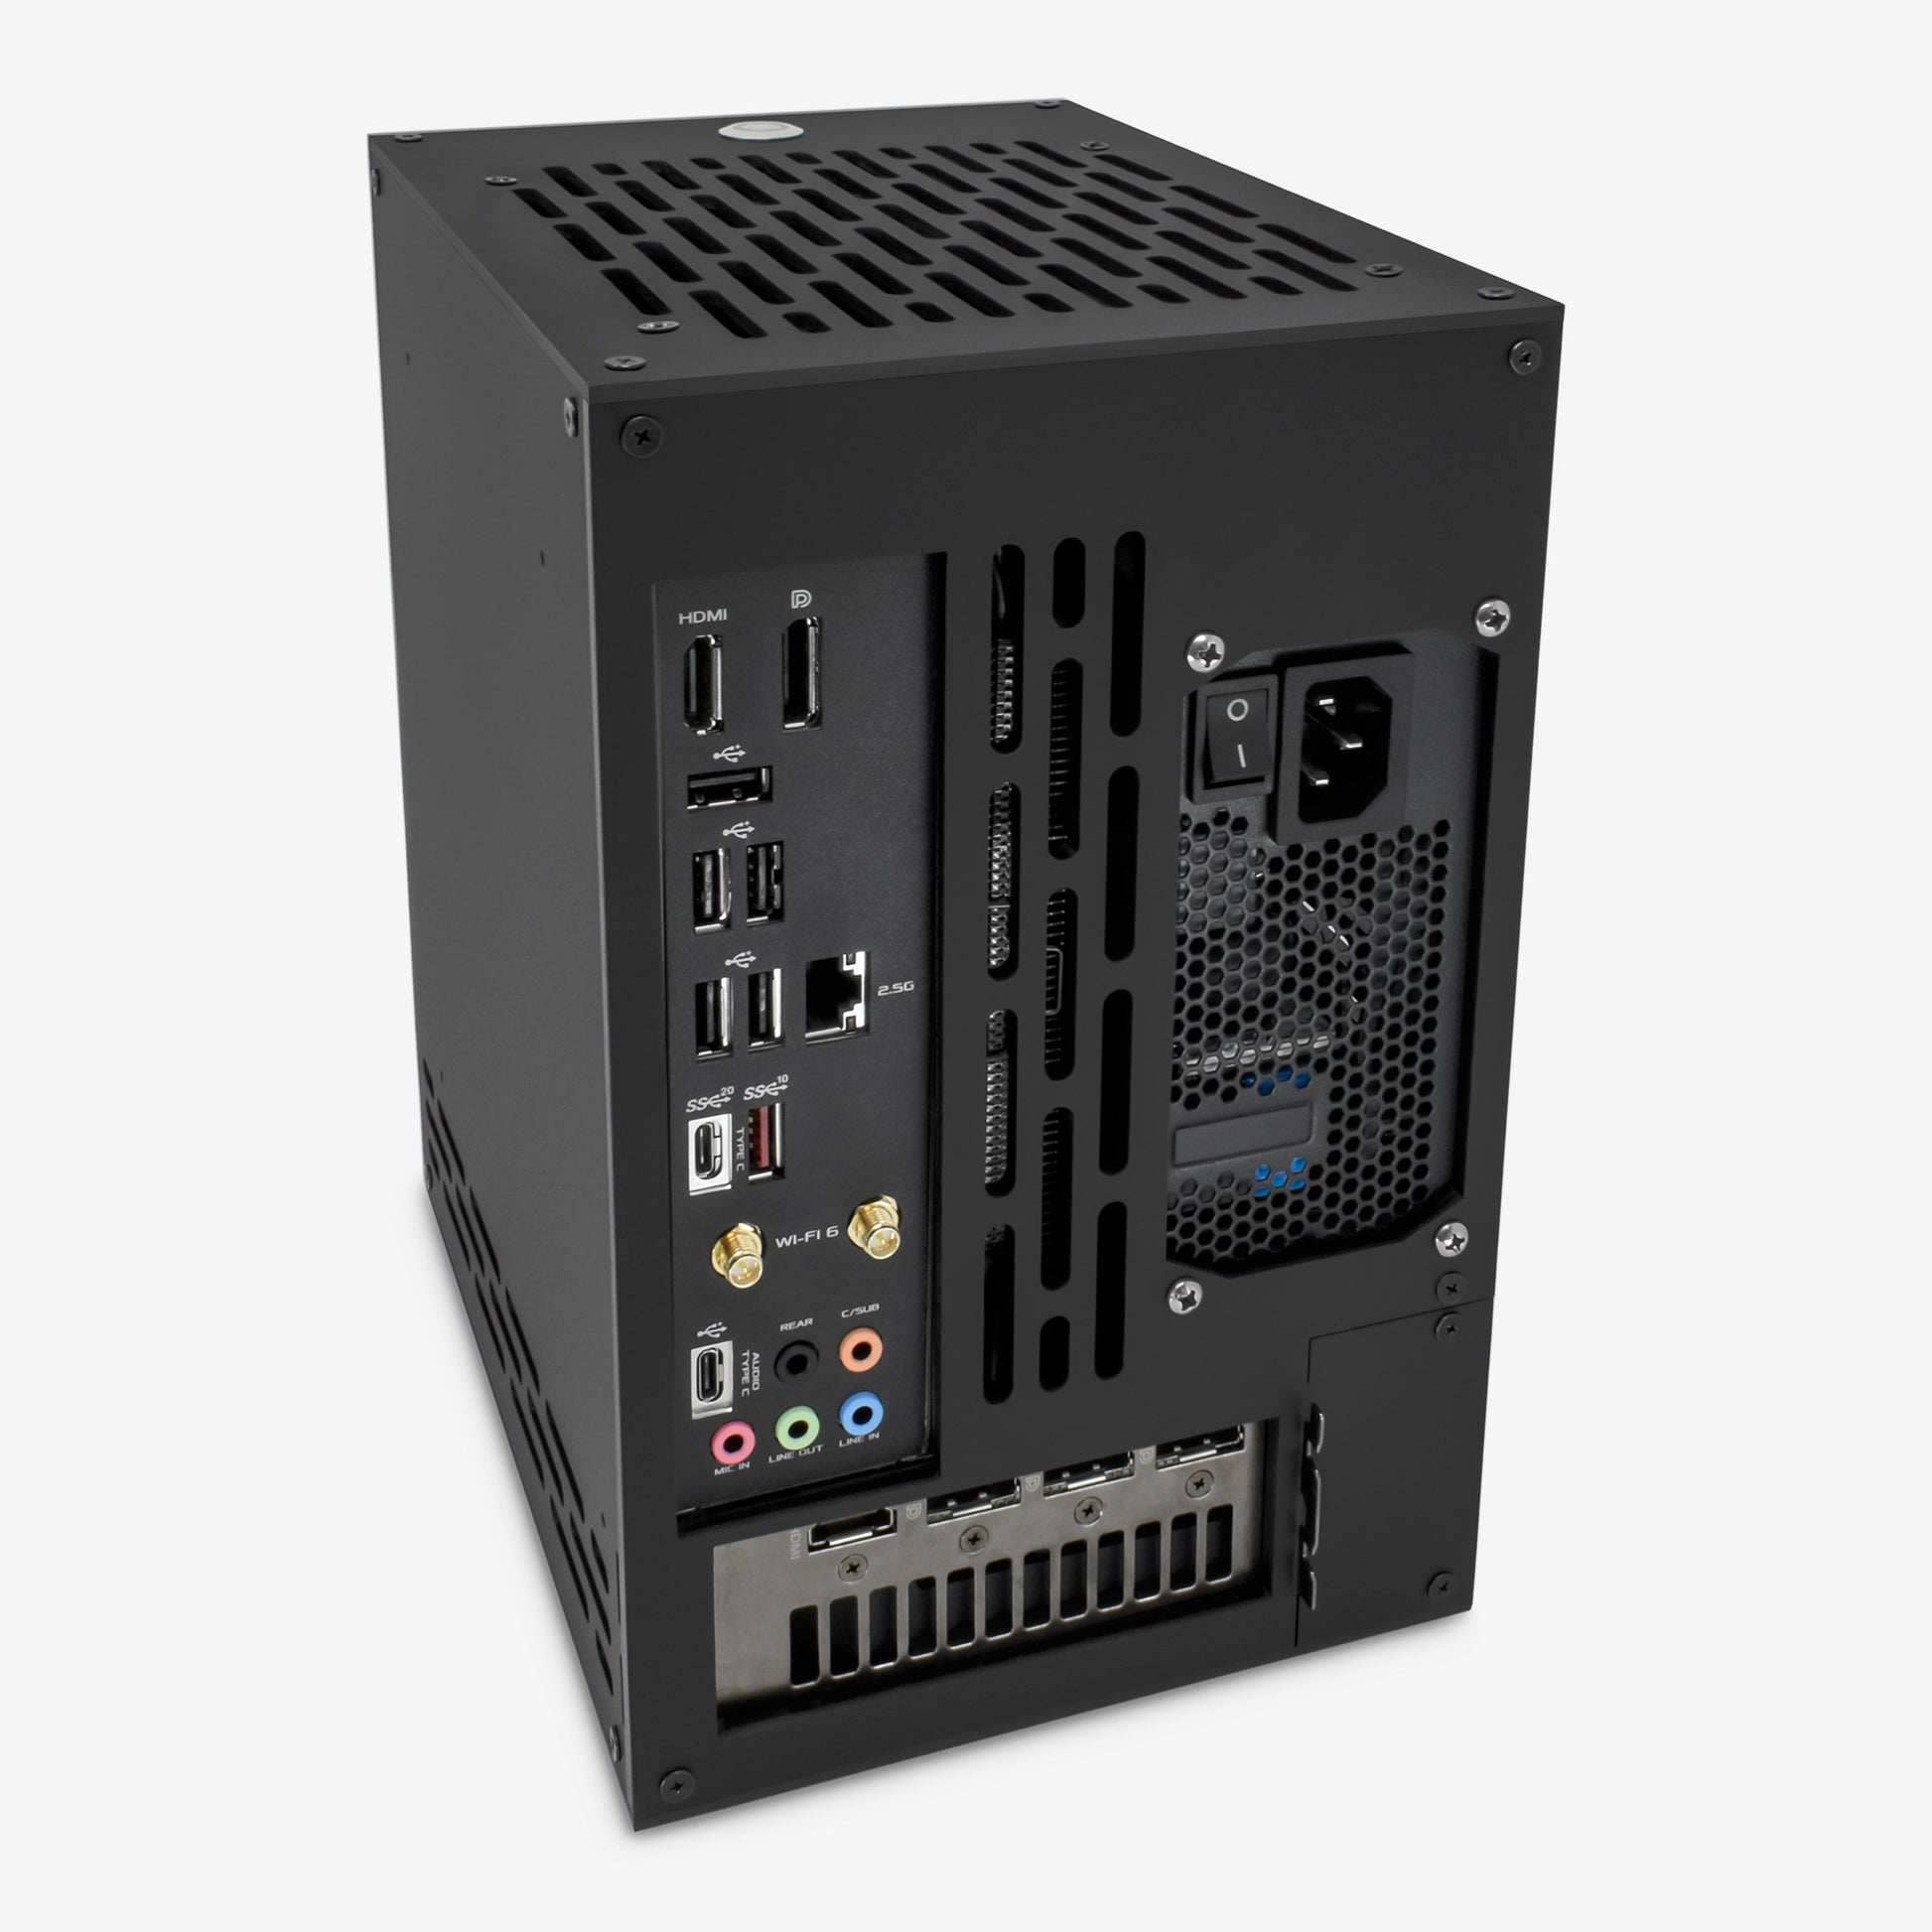 malkans SF8G Mini-ITX Gaming PC